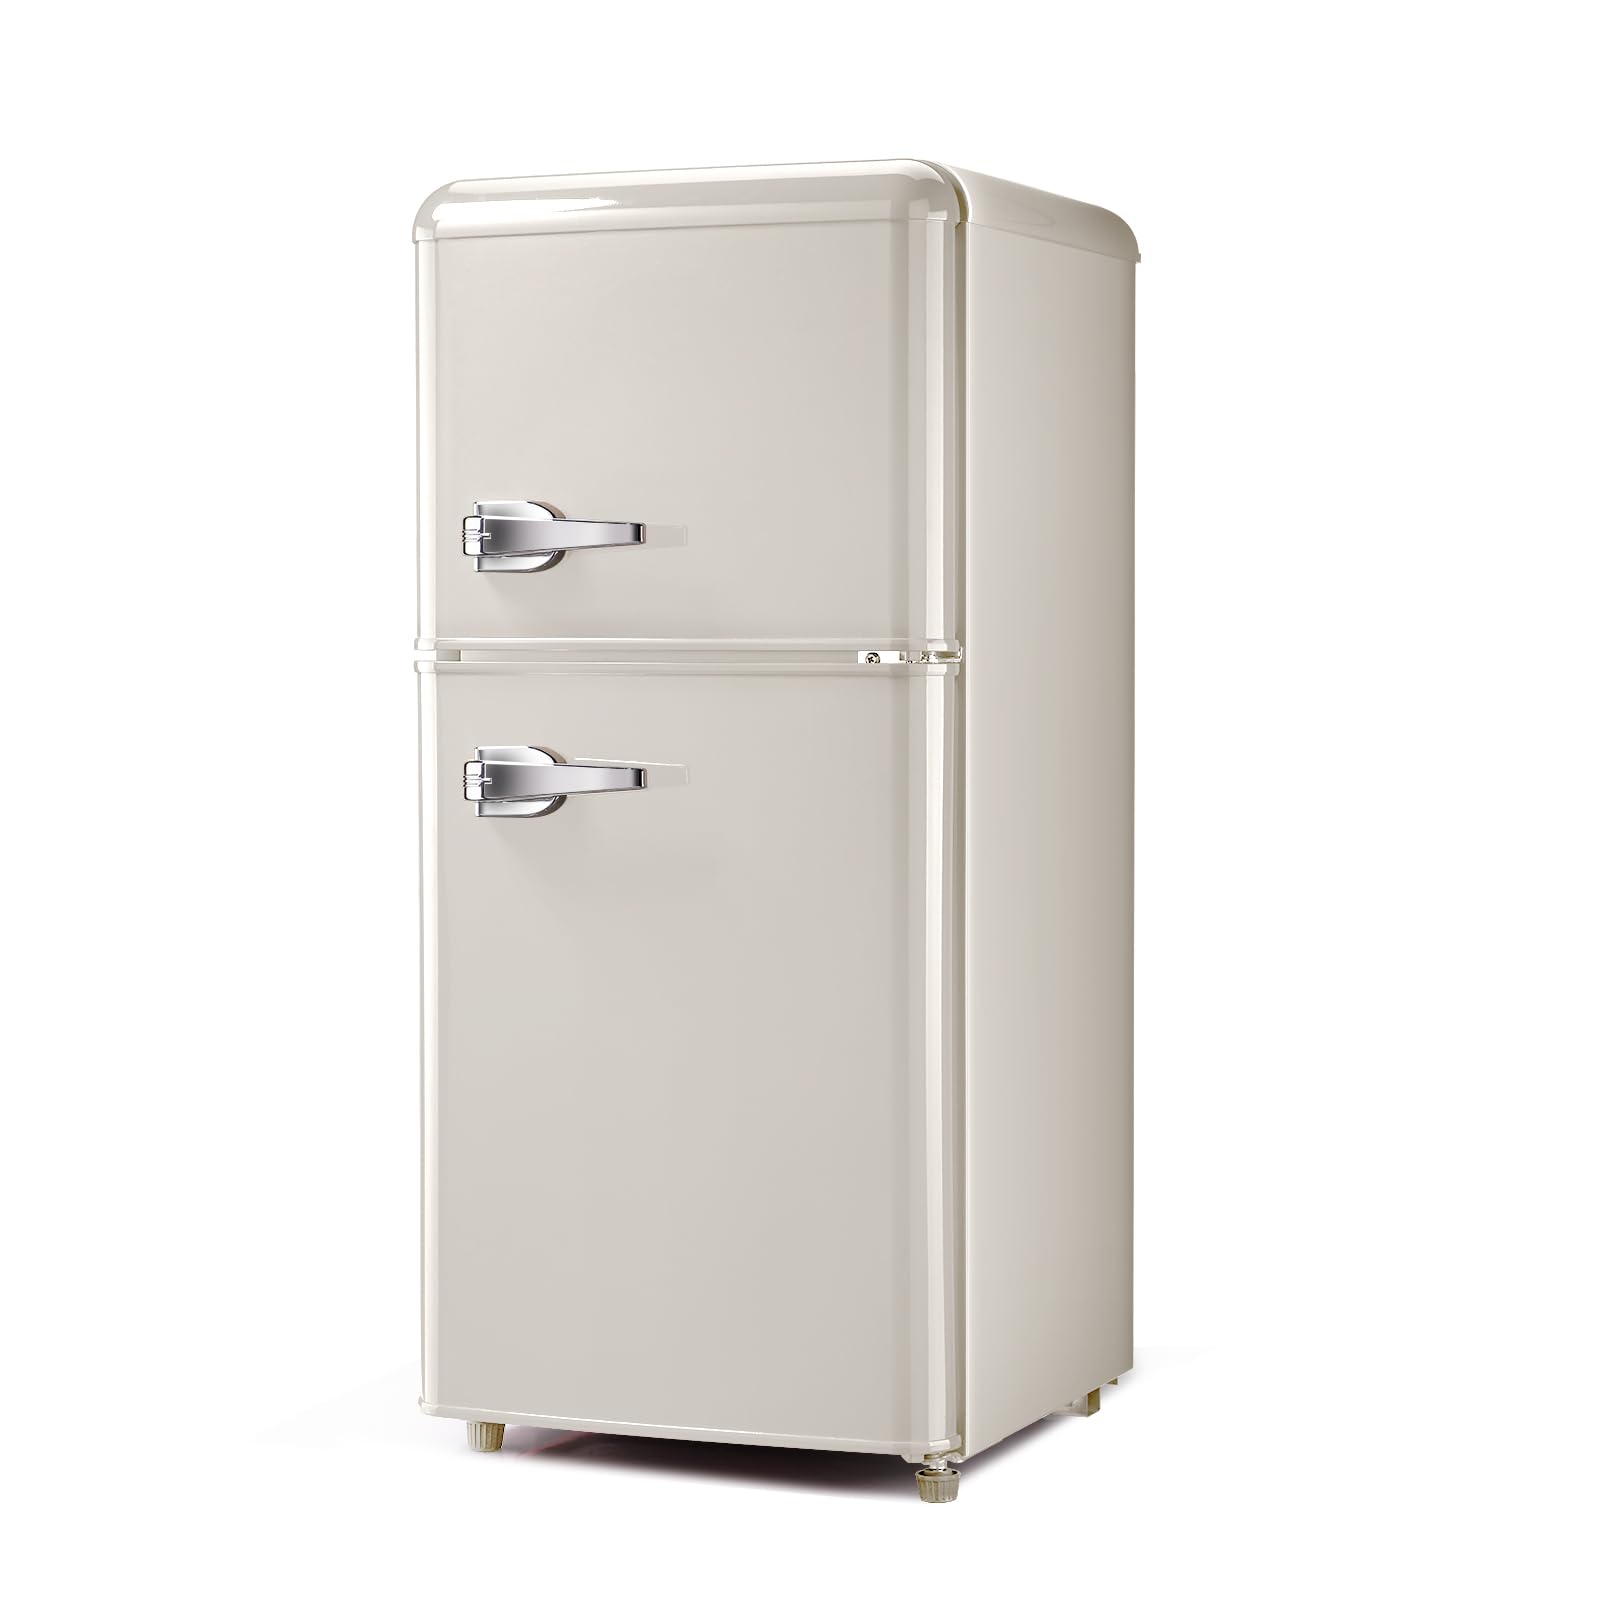 HOPDAY FLS-80G-cream Retro Compact Refrigerator, Cream